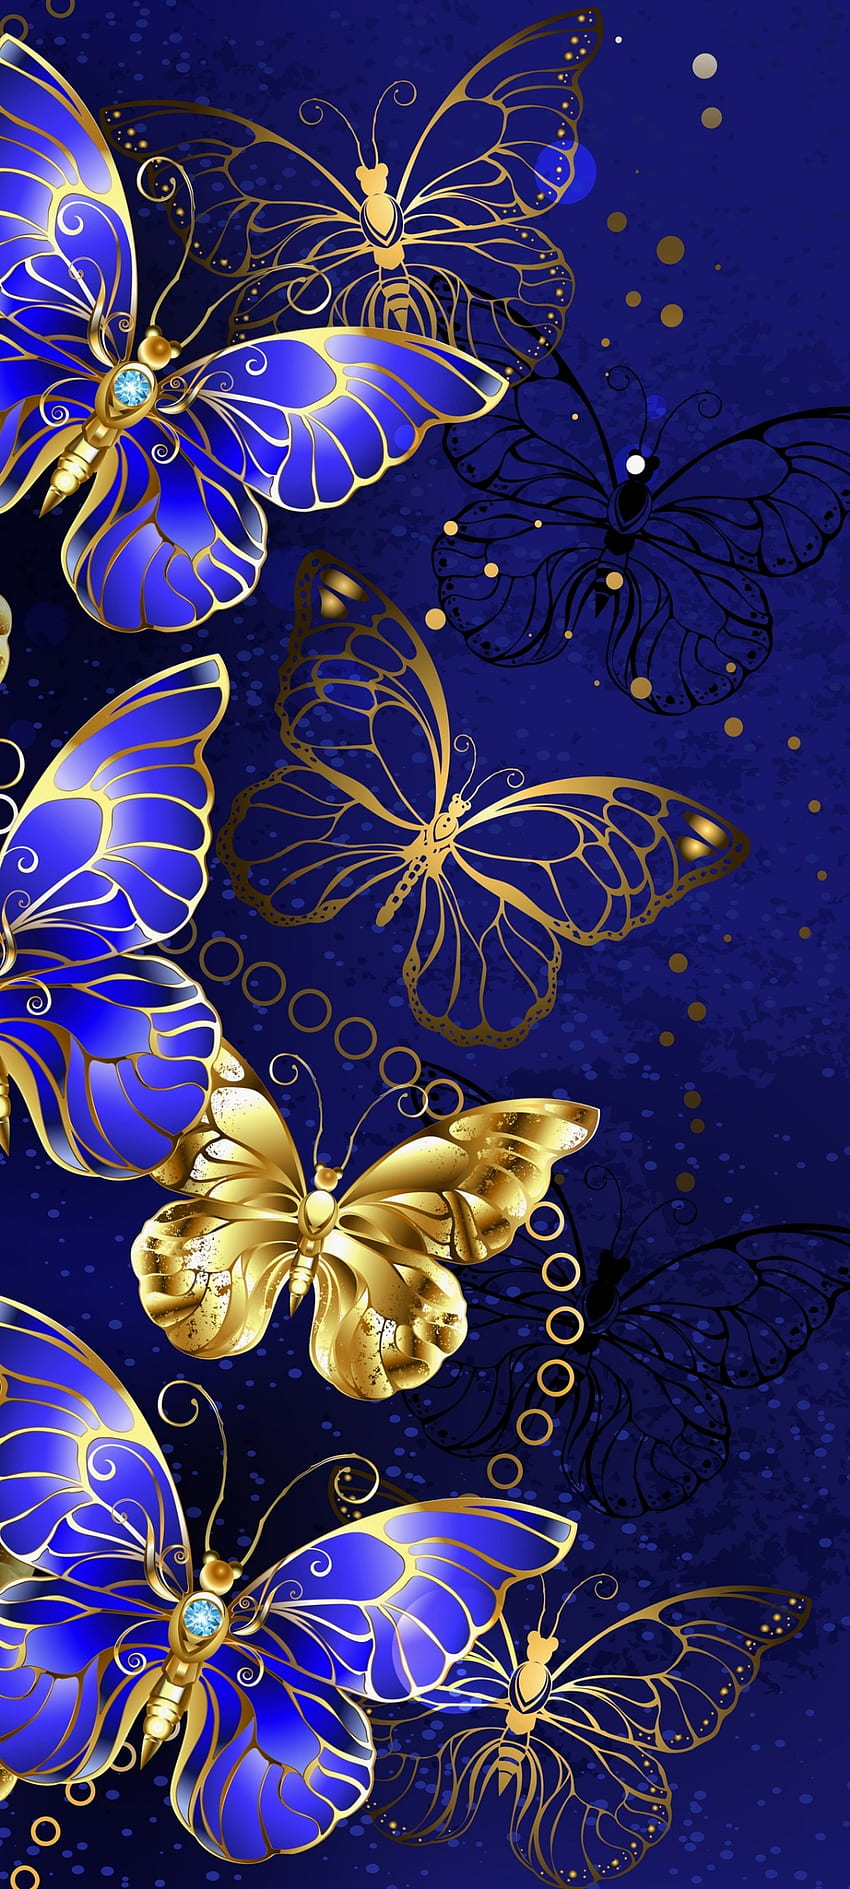 Luxury GoldenButterfl, Nature, gold, moths and butterflies ...